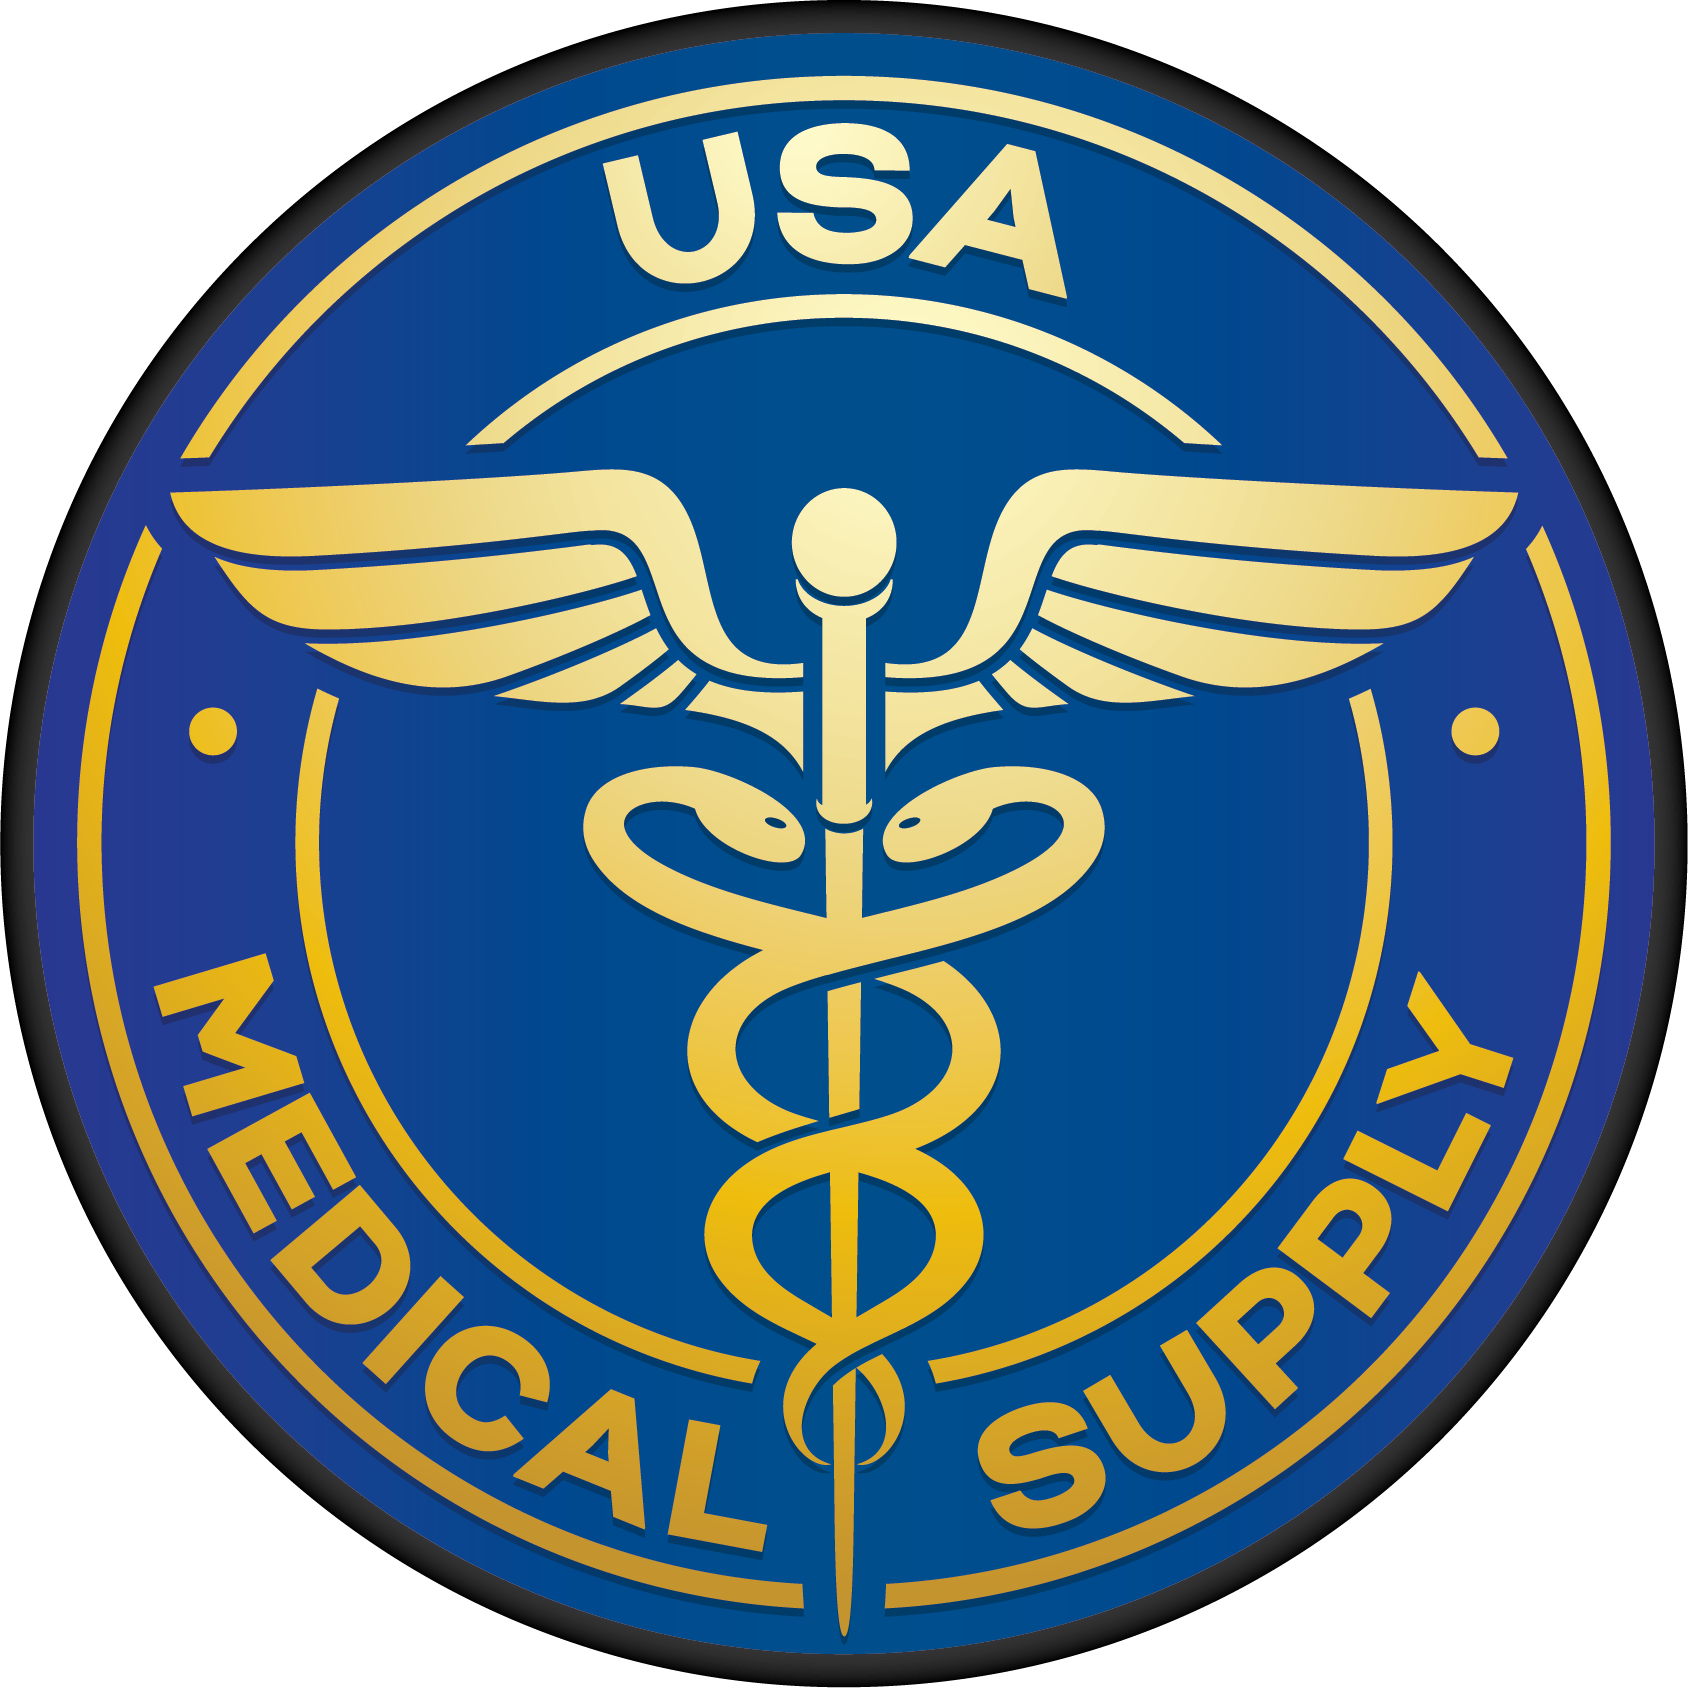 USA Medical Supply Distributors